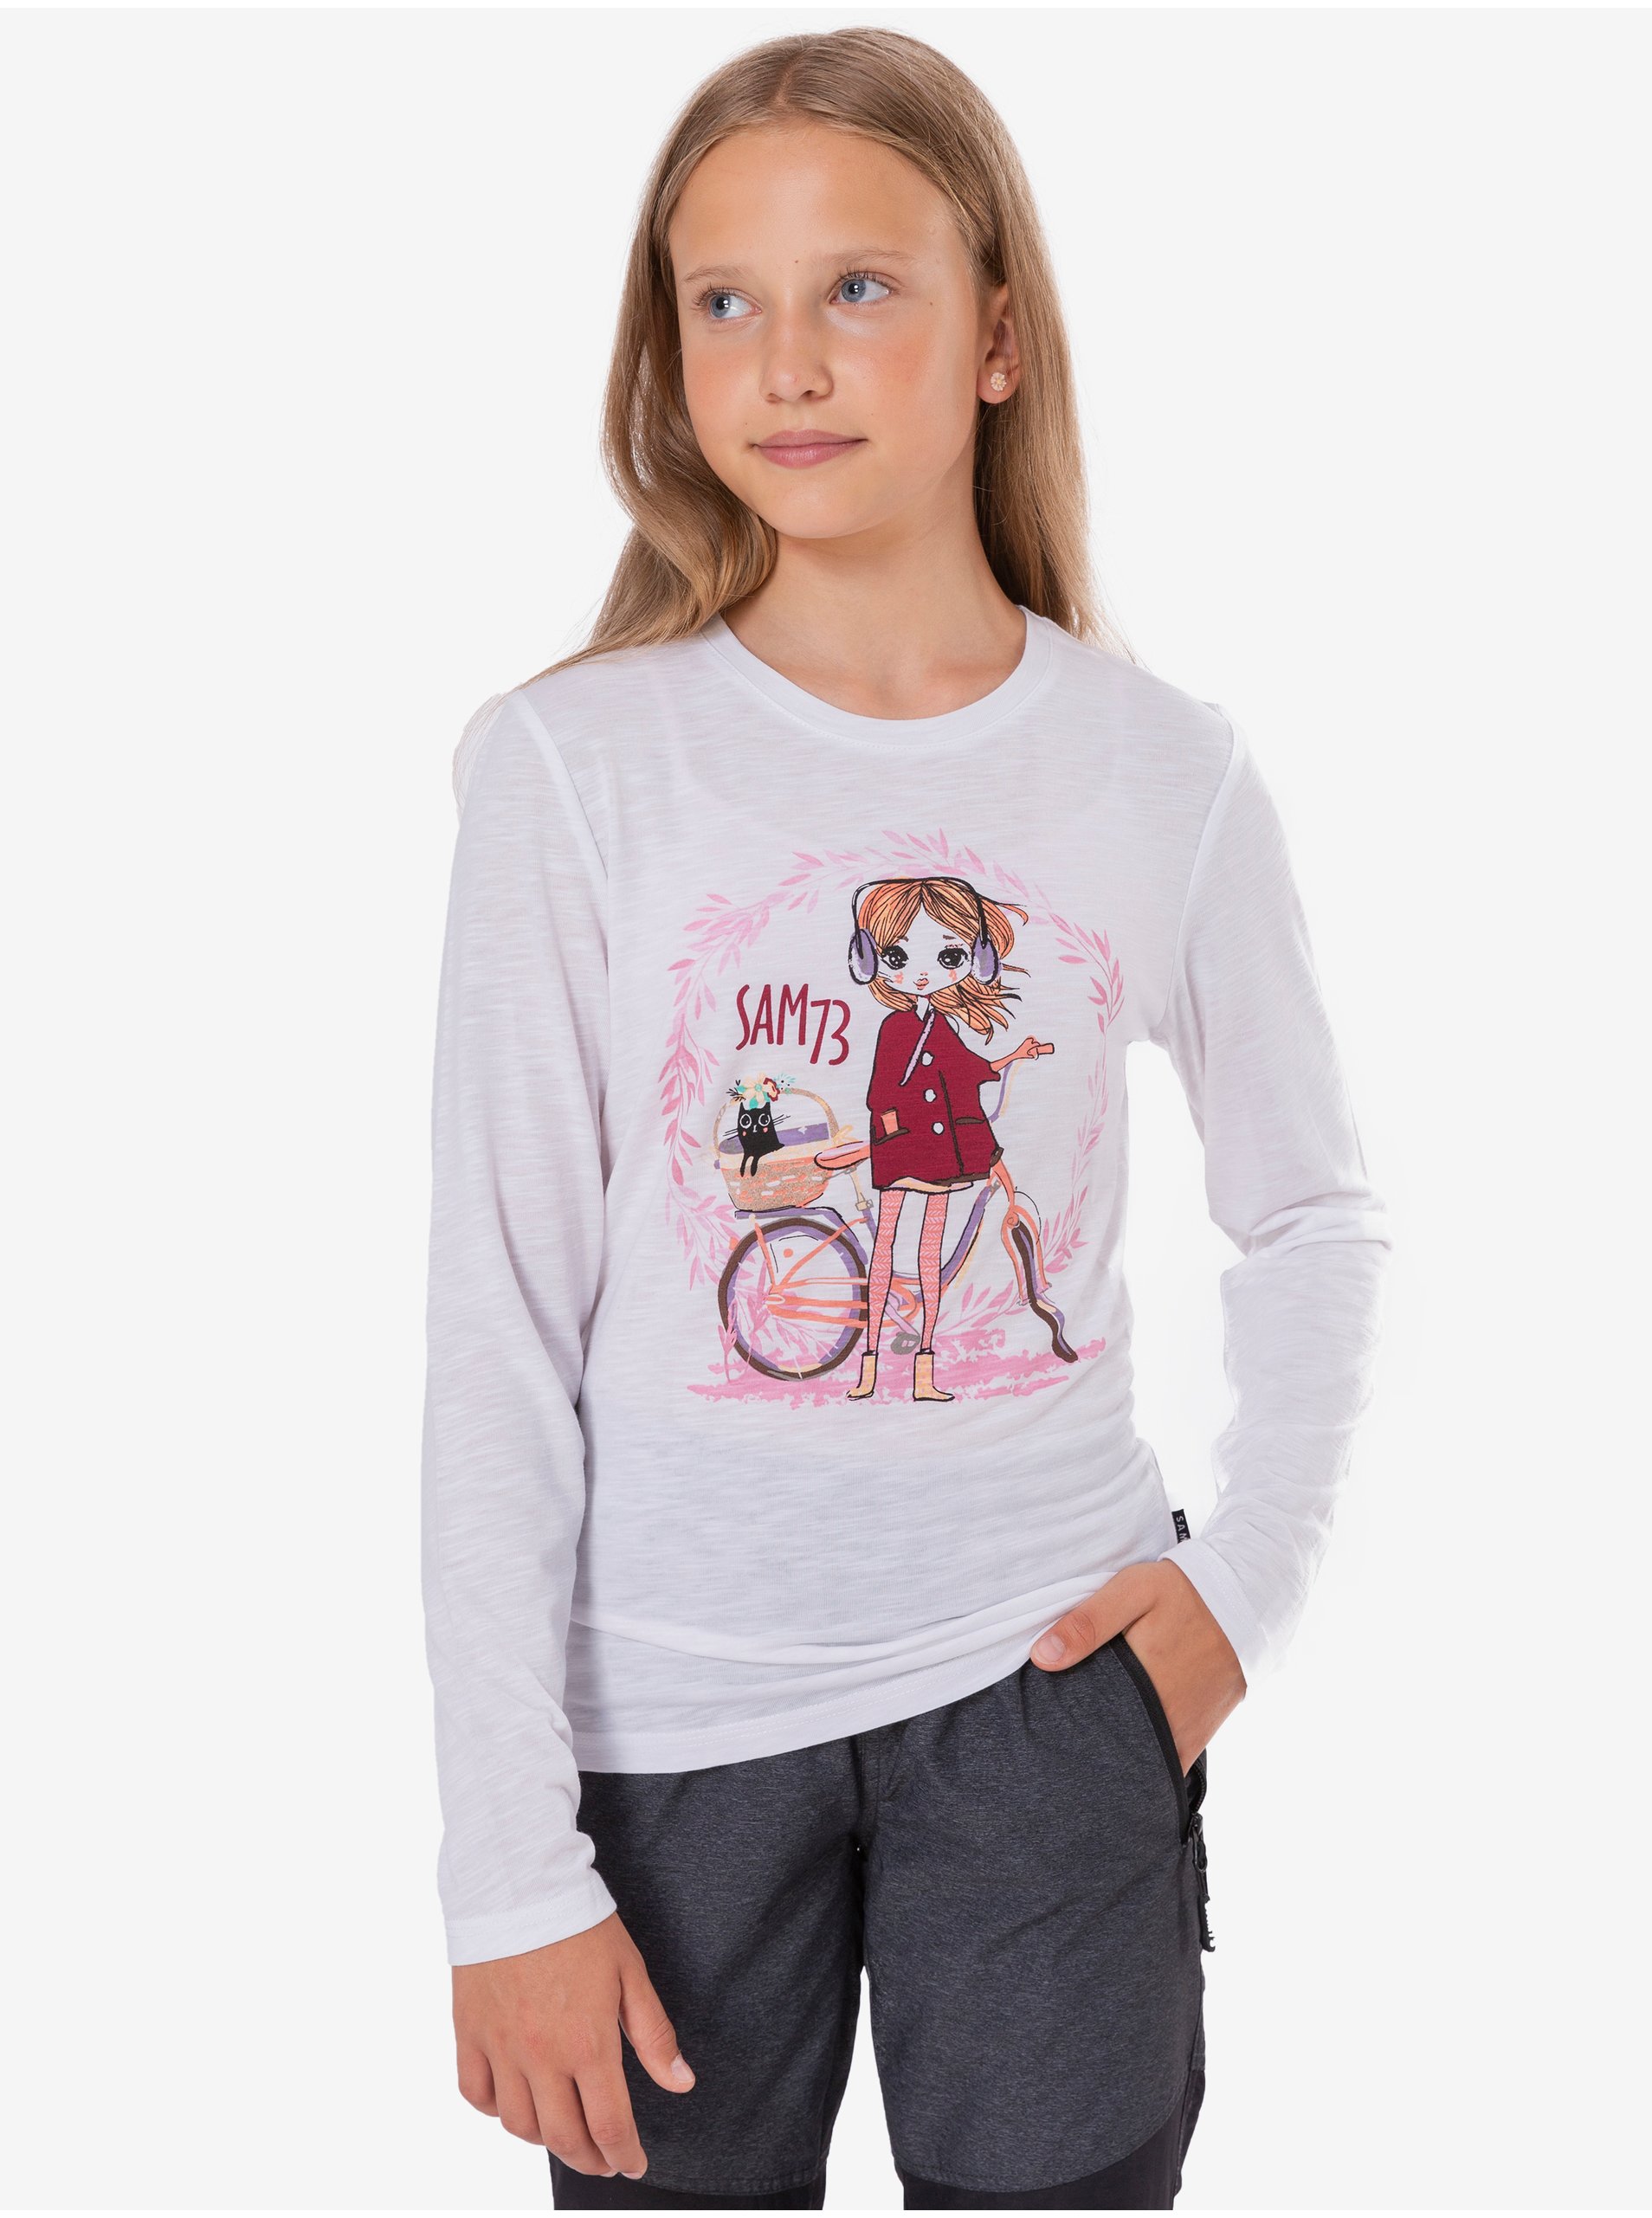 E-shop Bílé holčičí tričko s potiskem SAM 73 Charlotte